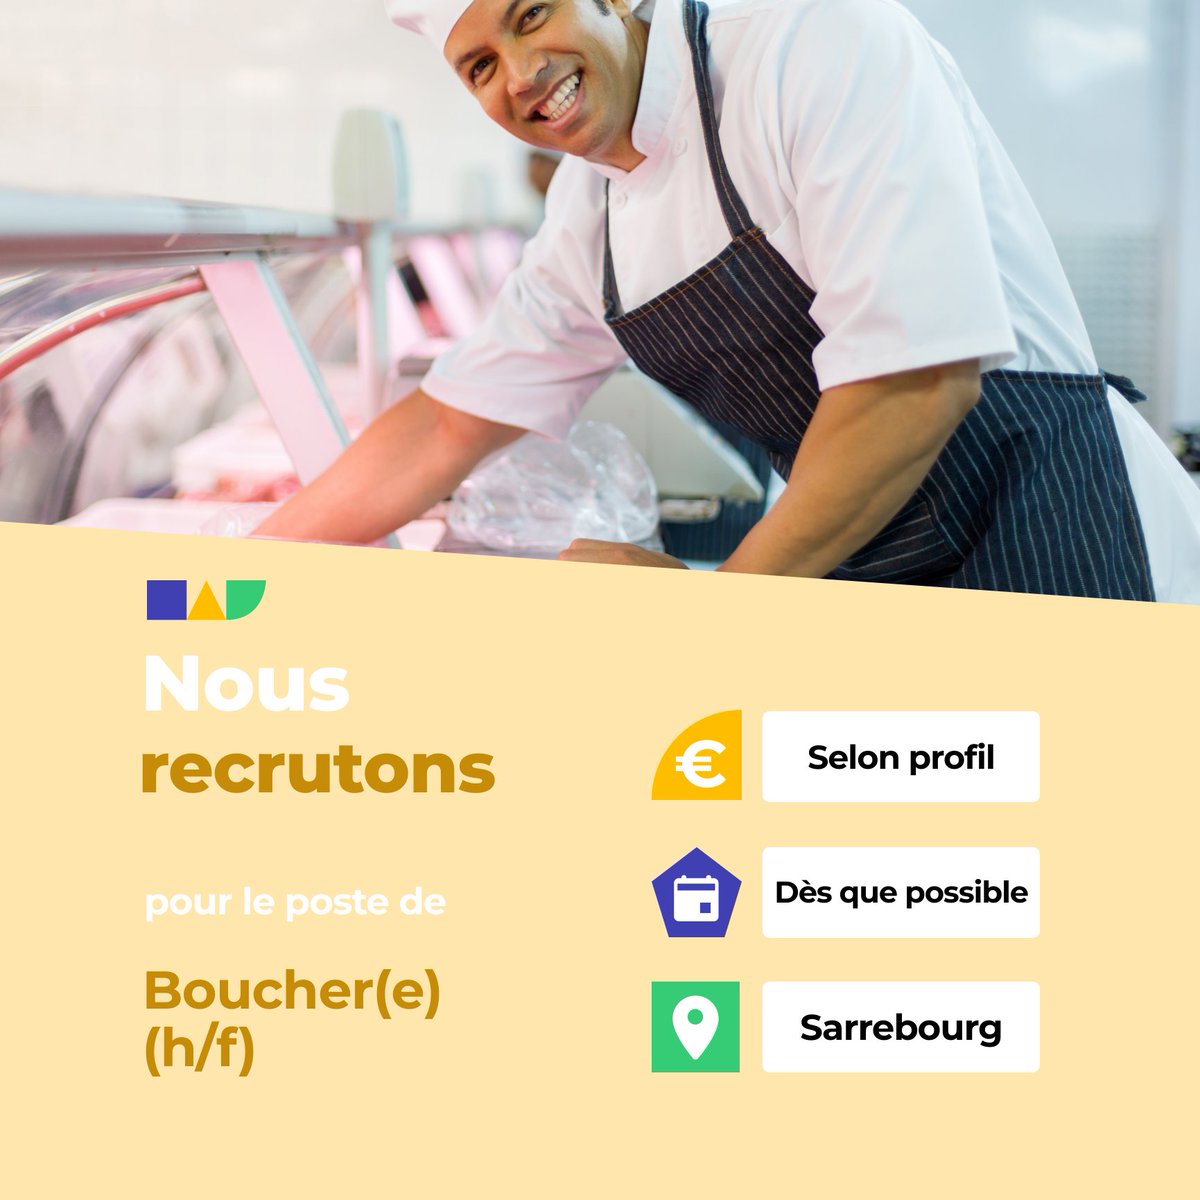 🛎️ Nouvelle offre d'emploi : Boucher(e) (h/f) 🌎 Sarrebourg (57400) 📅 Démarrage dans les 7 prochains jours 👉 Plus d'infos : jobs.iziwork.com/fr/offre-emplo… #recrutement #intérim #emploi #OffreEmploi #job #iziwork